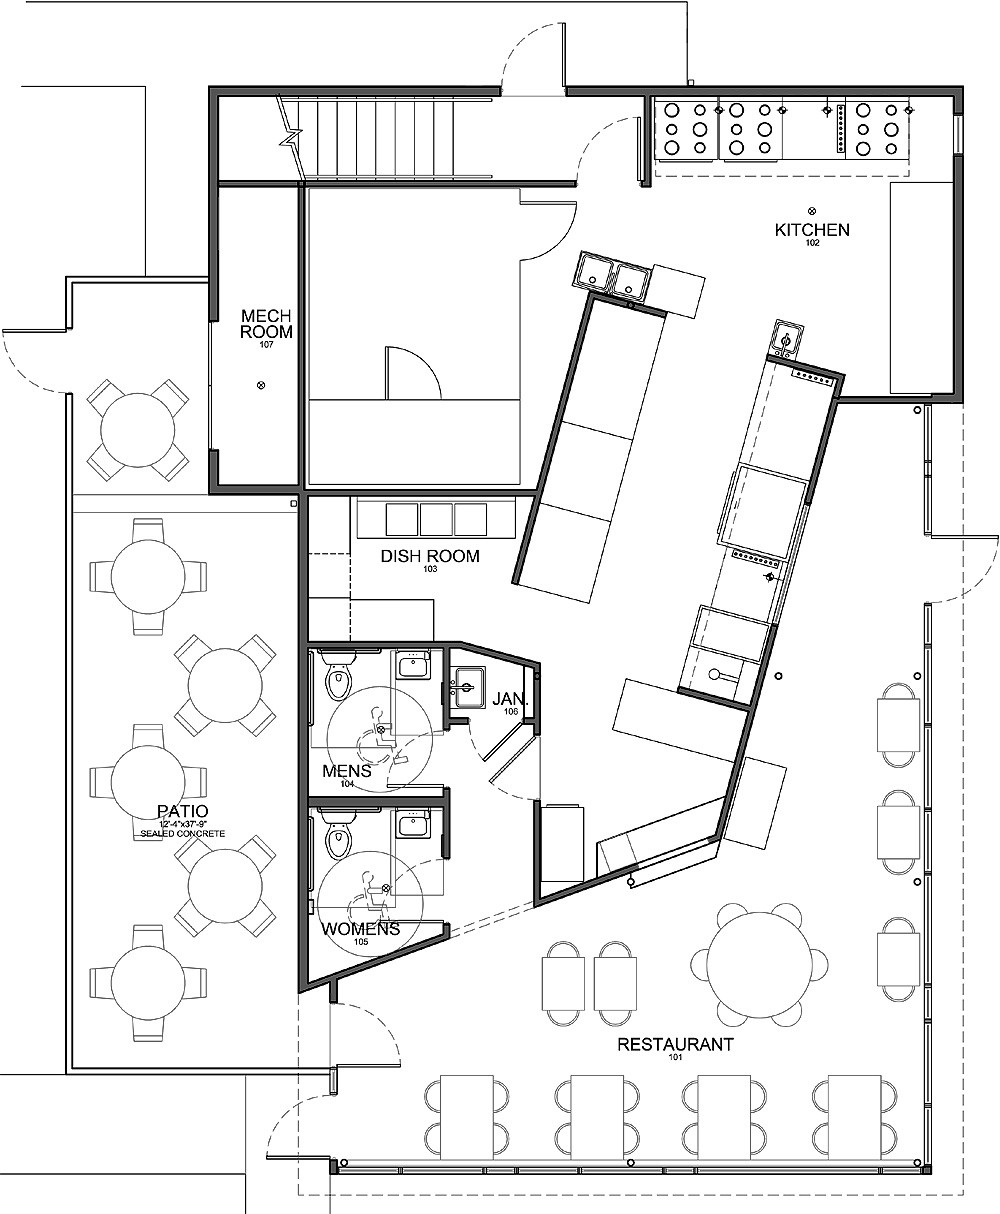 Restaurant Kitchen Floor Plan
 Plan Architecturale D Un Restaurant